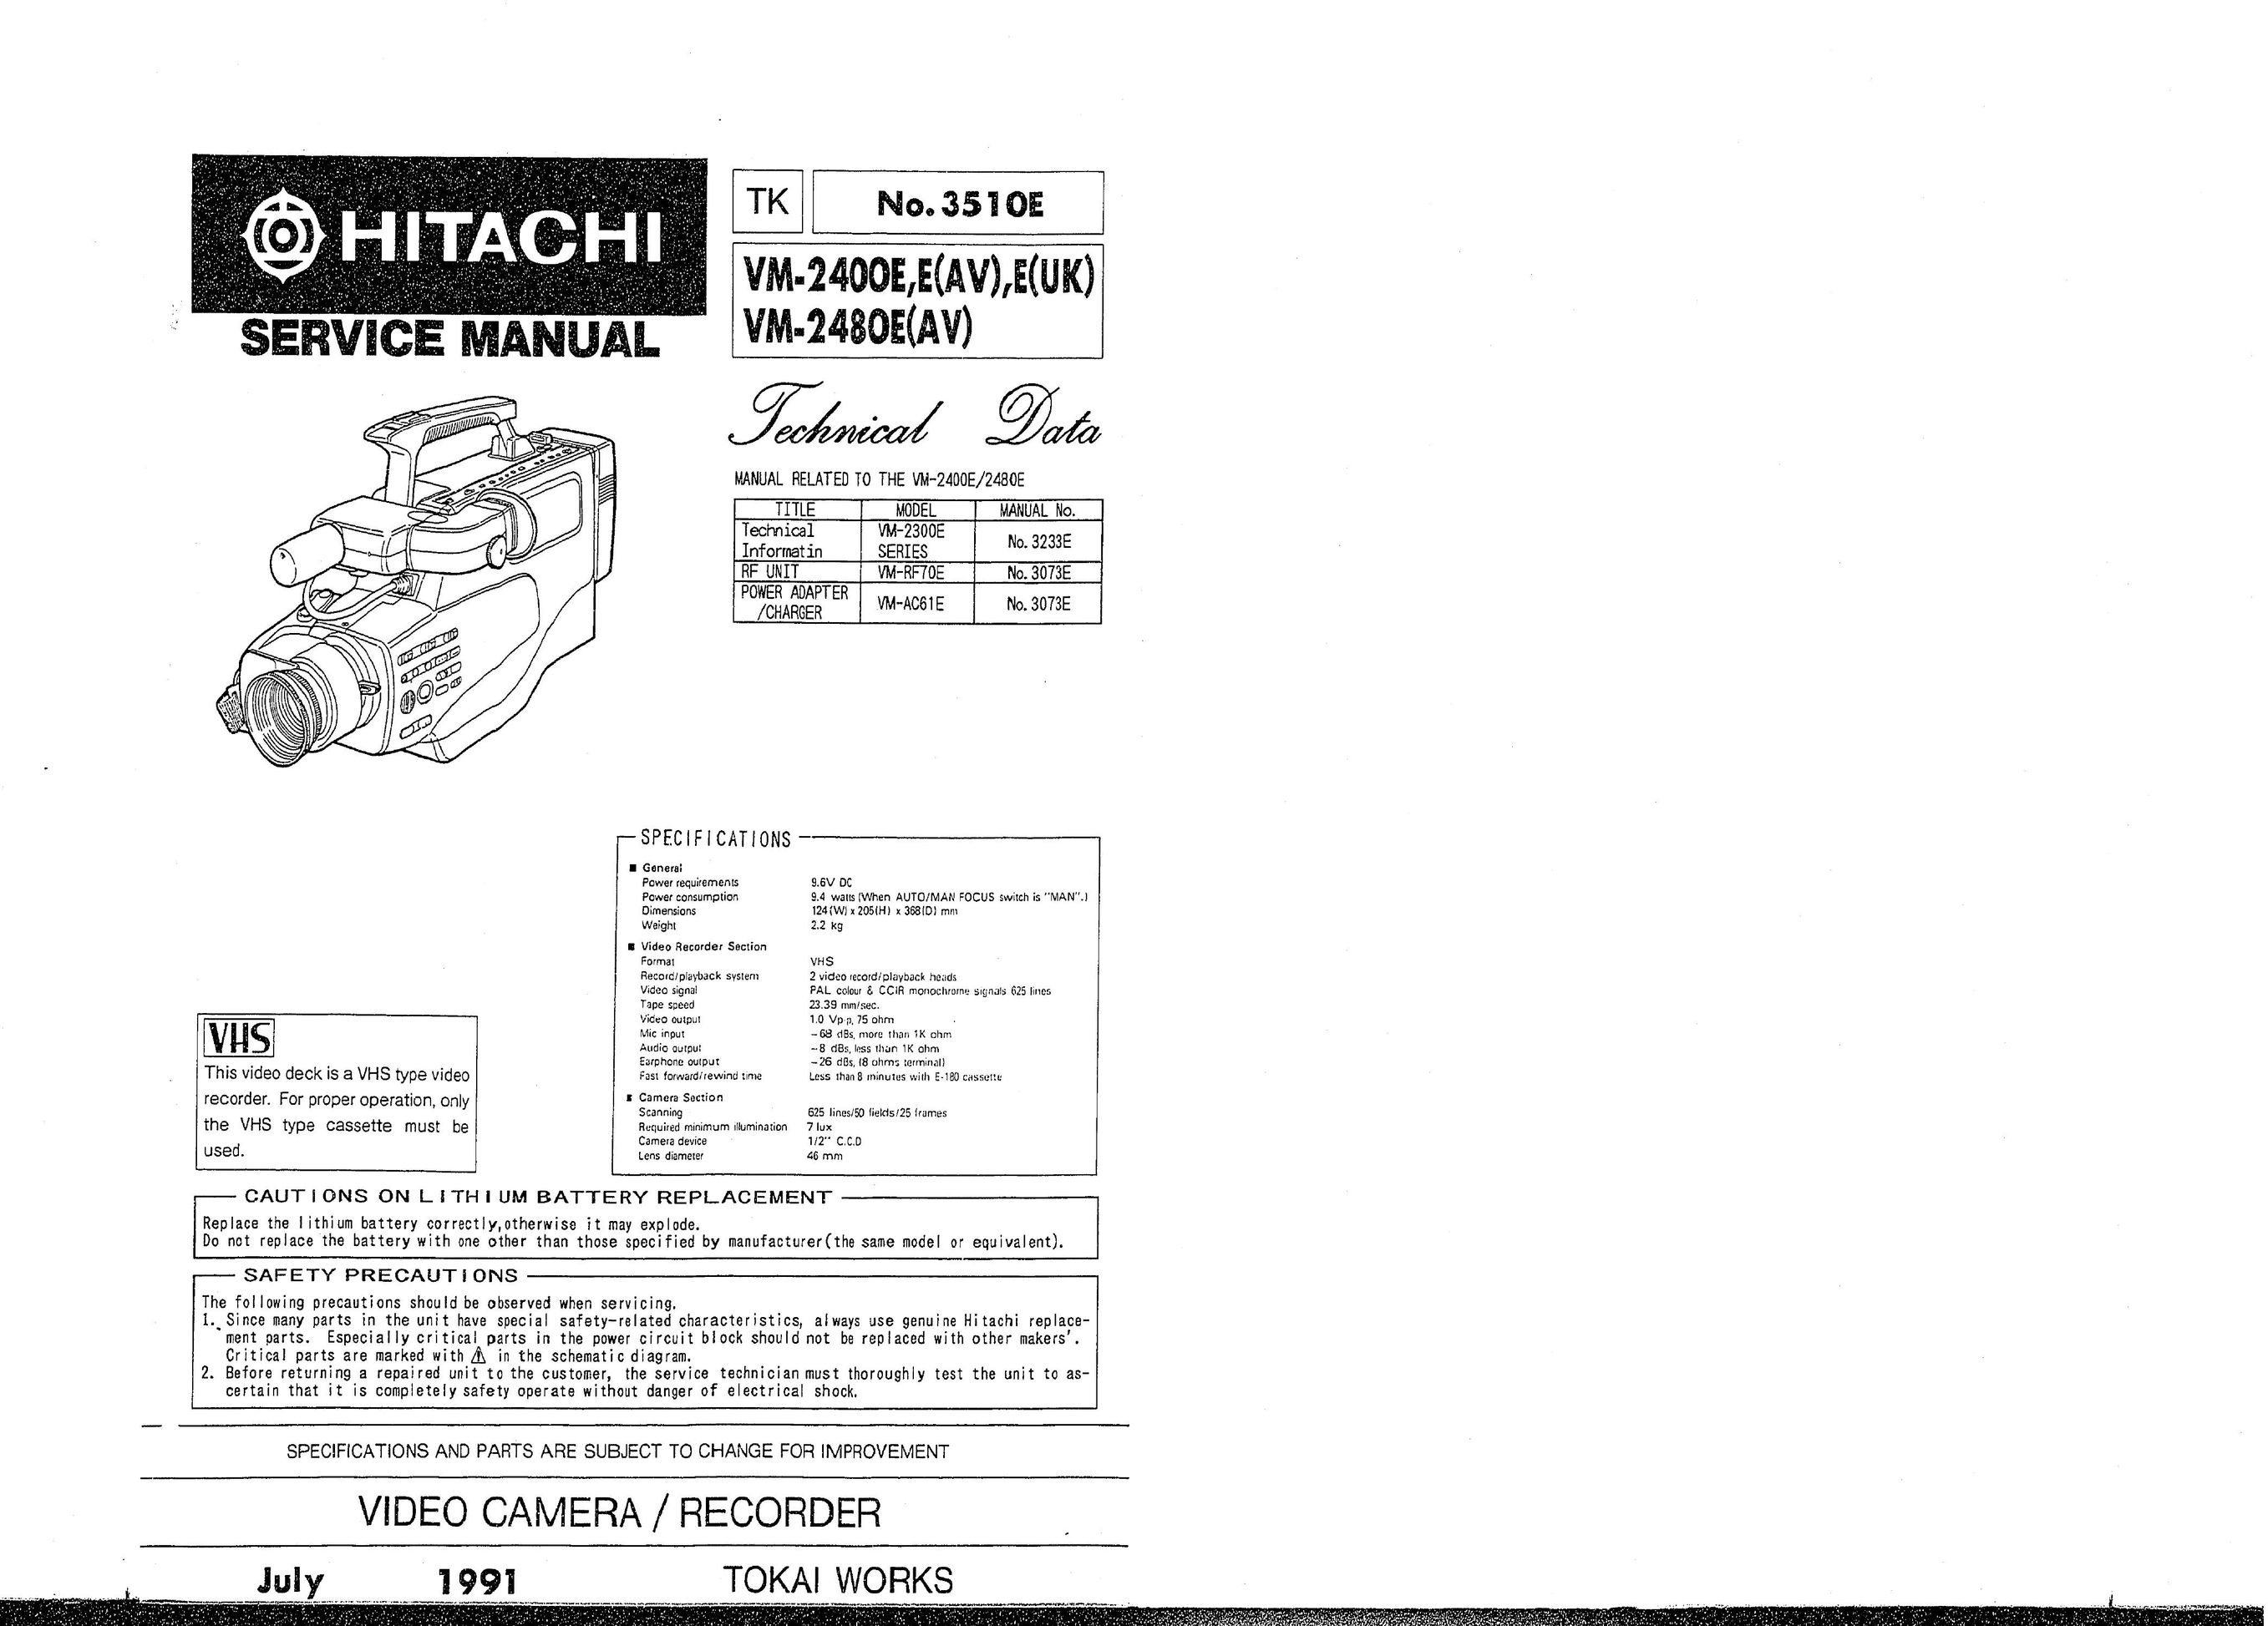 Hitachi VM-2400E DVR User Manual